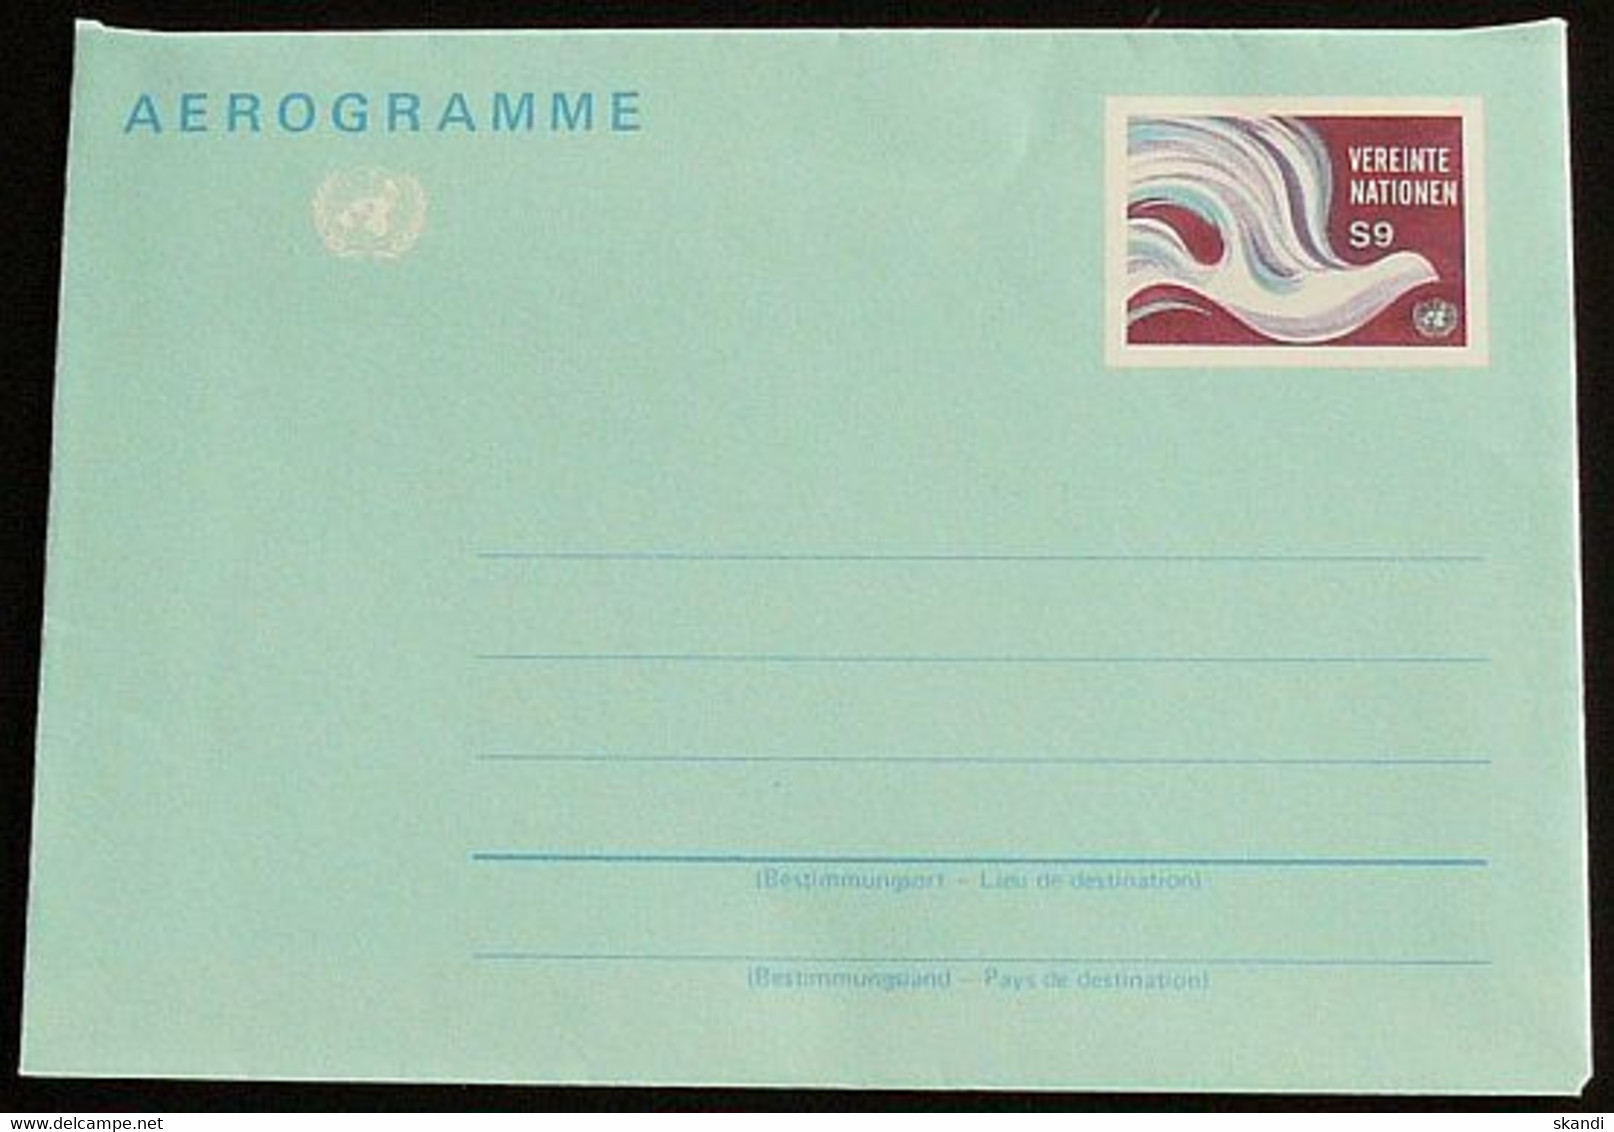 UNO WIEN 1994 Mi-Nr. LF 1 Luftpostfaltbrief Aerogramme Ungebraucht - Covers & Documents